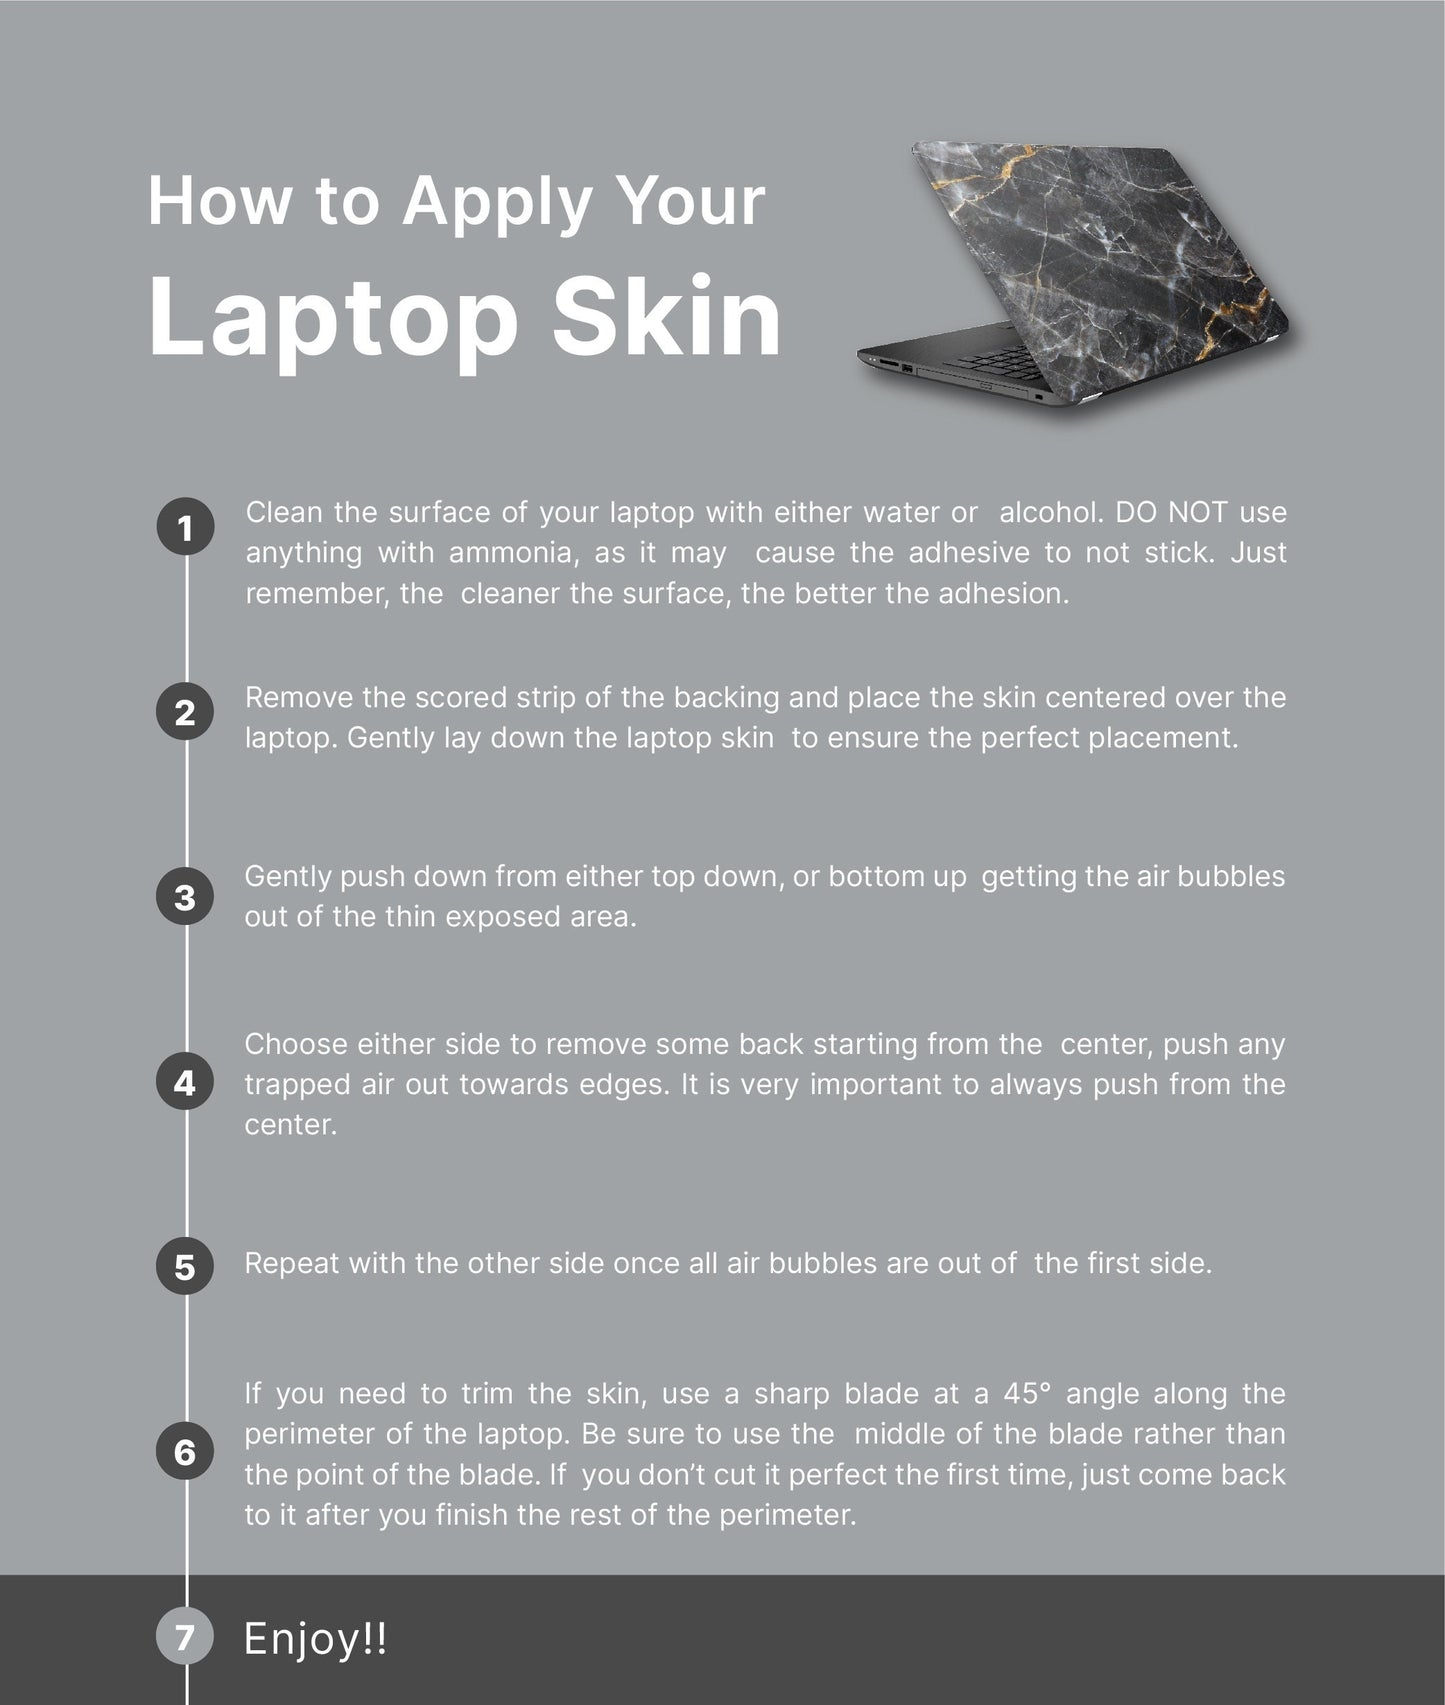 Tropic Floral Laptop Skin, Laptop Cover, Laptop Skins, Removable Laptop Skins, Laptop Decal, Customized Laptop Skin, Laptop Stickers 100 - James & Inks